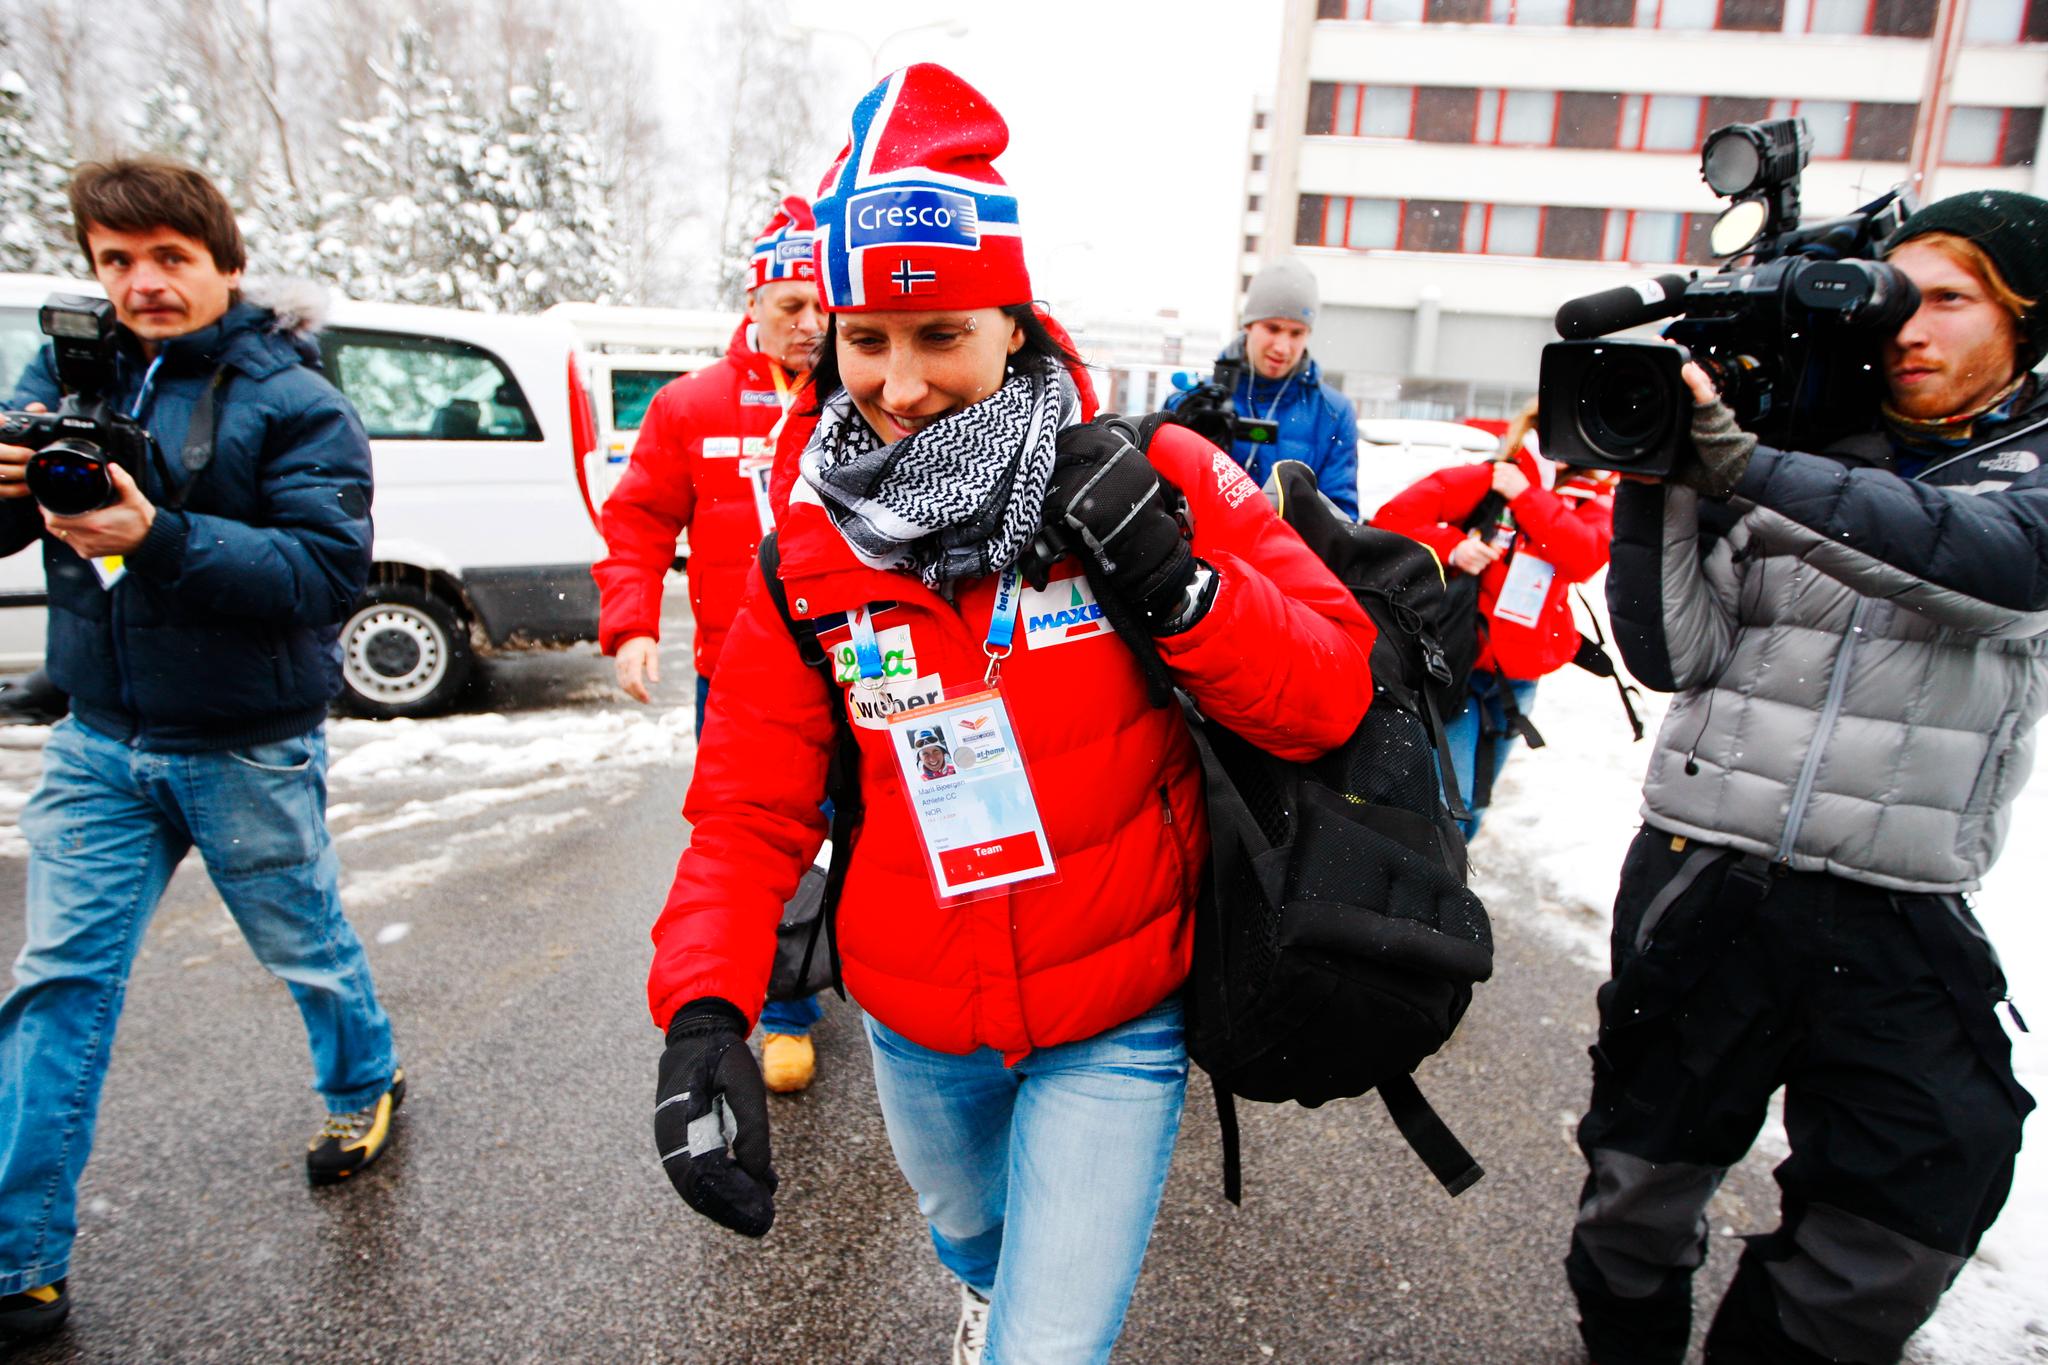 VM i Liberec i 2009 ble en eneste stor nedtur med sykdom og svake resultater. Etter dette mesterskapet var Marit Bjørgen i ferd med å legge opp. Men gjorde noen grep og vinteren etter var hun tilbake som vinner. 